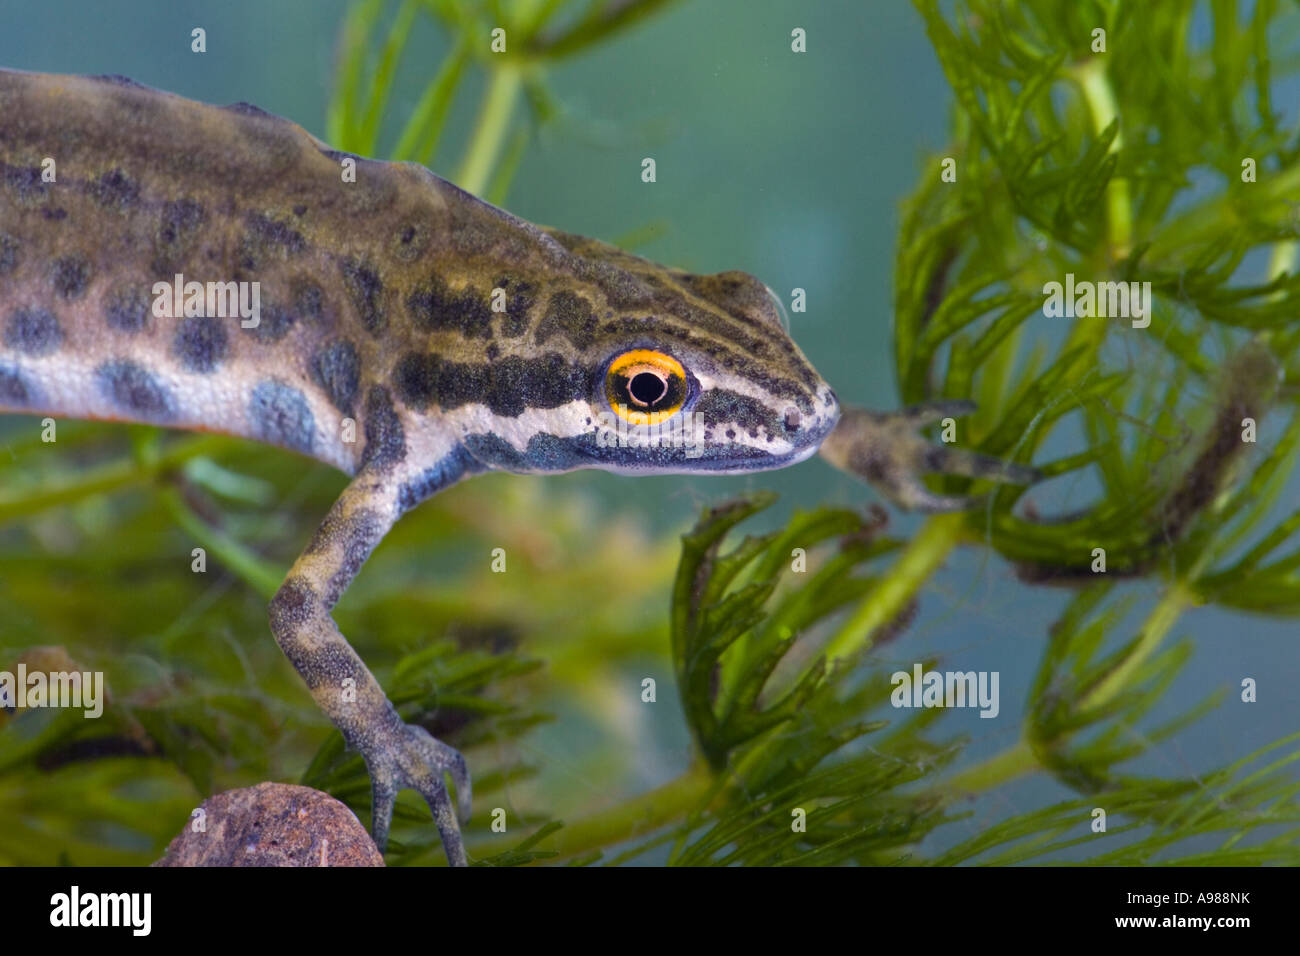 Maschio liscia comune newt (Triturus vulgaris) close up che mostra la testa e occhio del laghetto in giardino Gamlingay Cambs Foto Stock